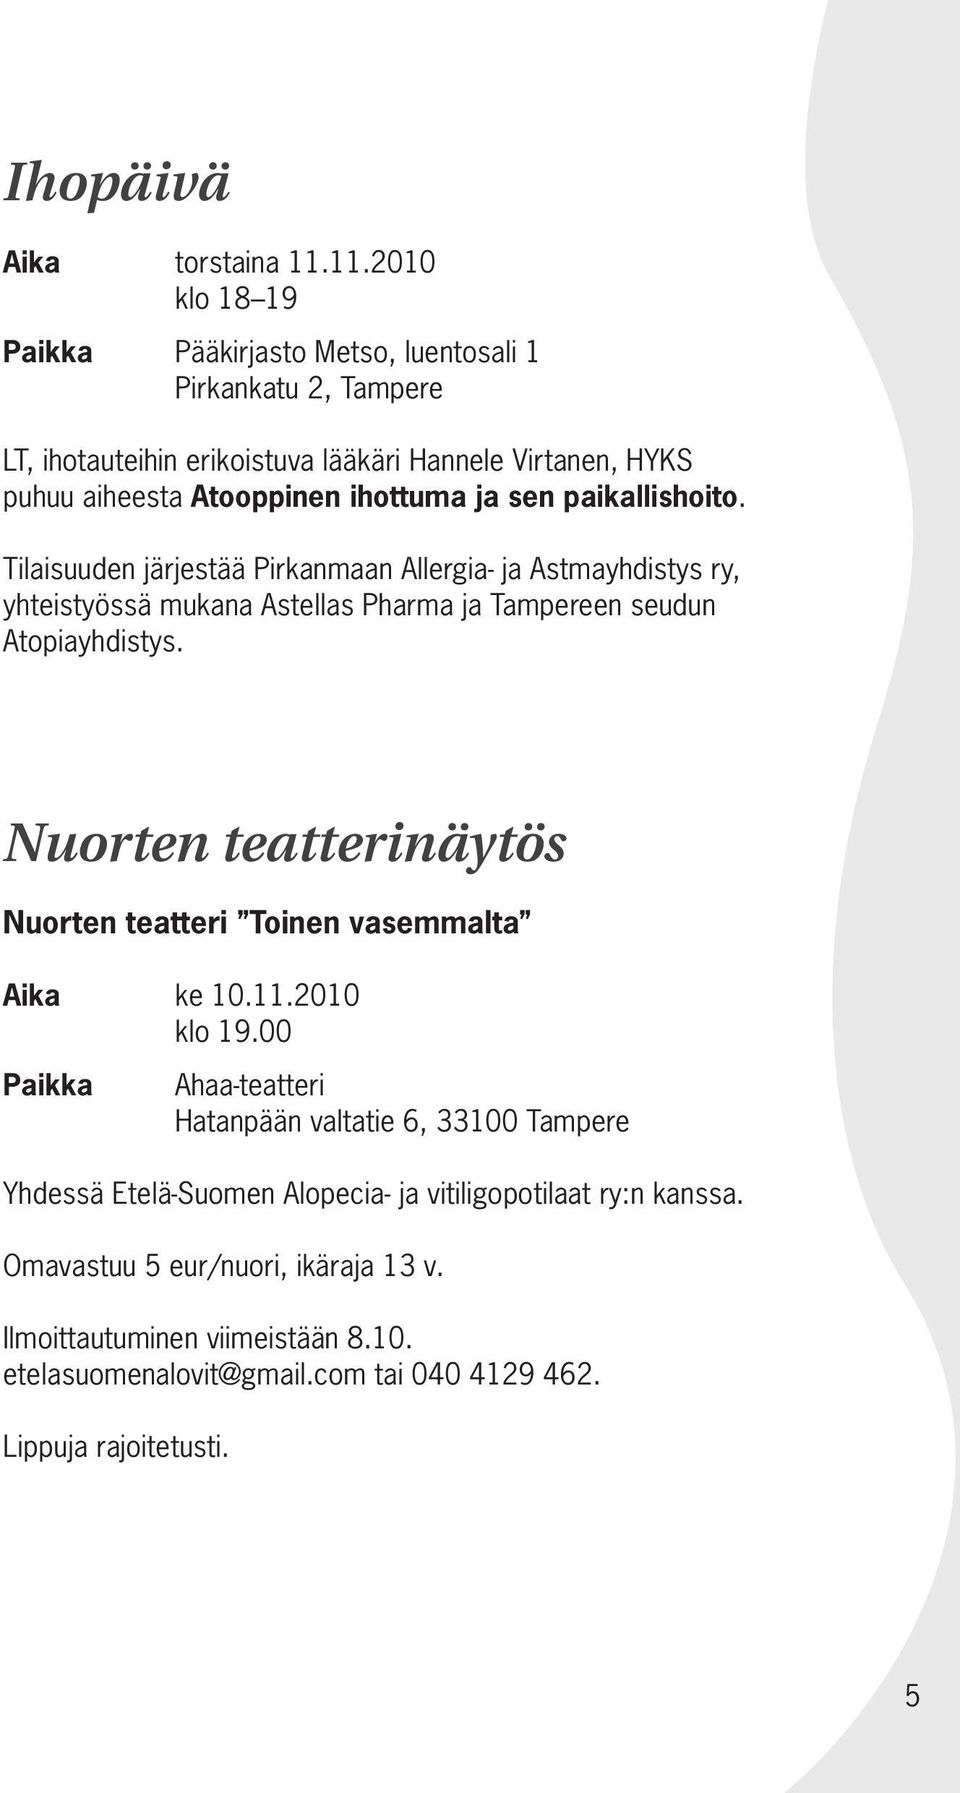 sen paikallishoito. Tilaisuuden järjestää Pirkanmaan Allergia- ja Astmayhdistys ry, yhteistyössä mukana Astellas Pharma ja Tampereen seudun Atopiayhdistys.